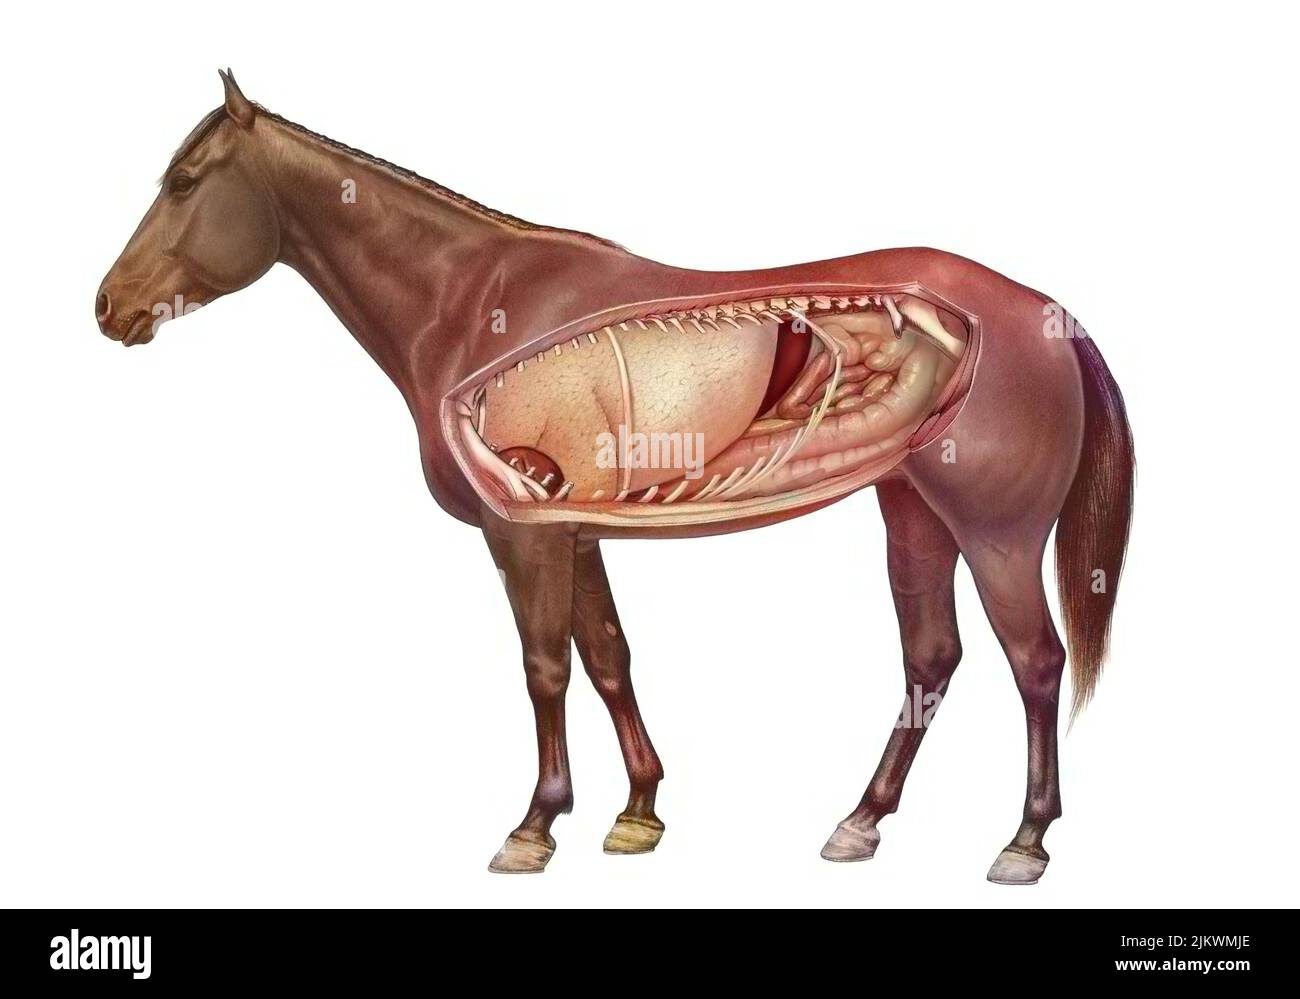 Anatomie d'un cheval montrant les poumons, système digestif. Banque D'Images